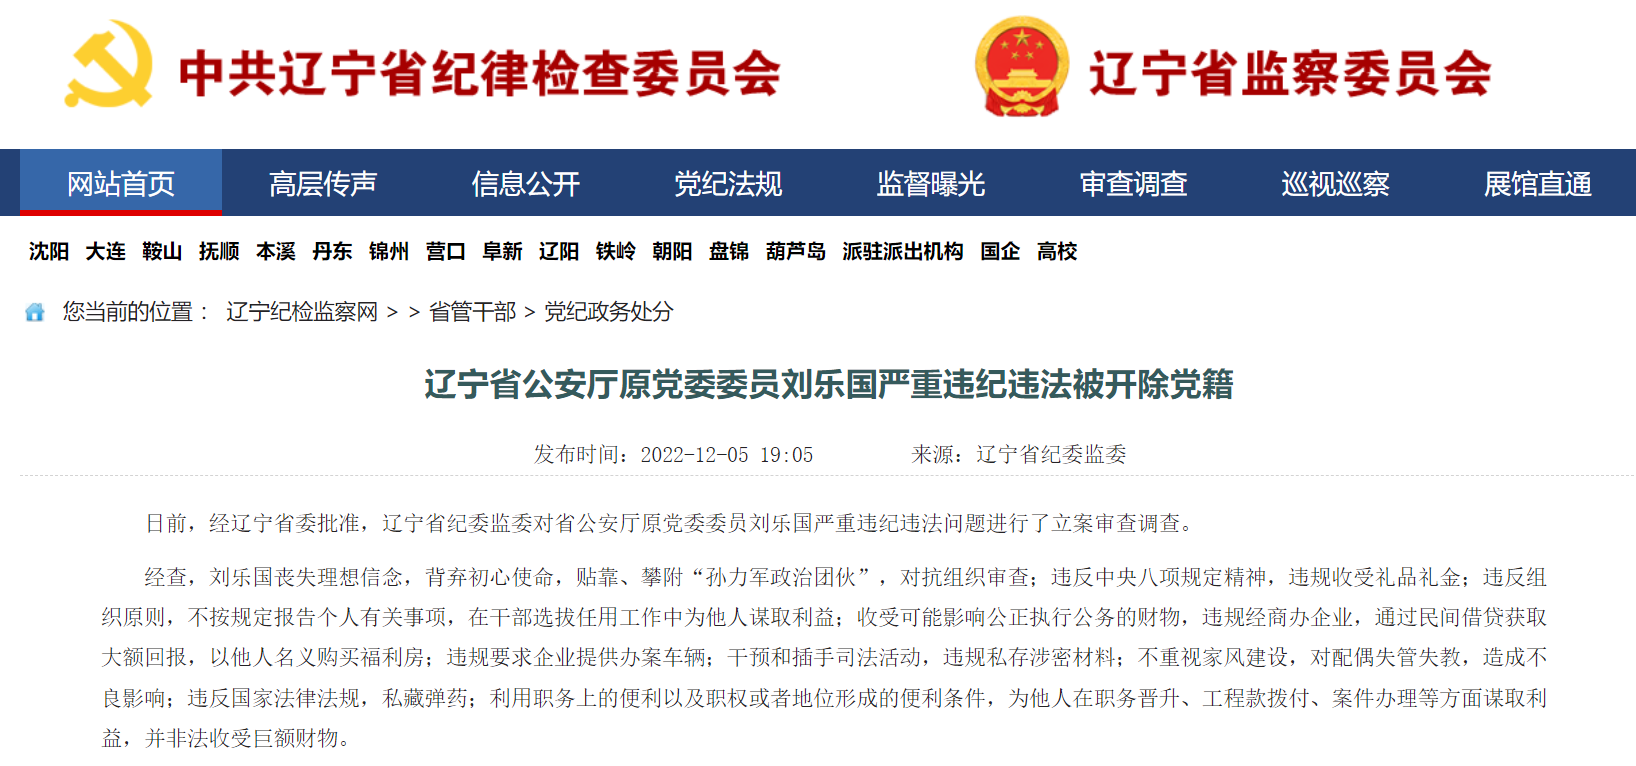 退休3年的辽宁警界“老虎”刘乐国被开除党籍 ，被指干预插手司法活动、私藏弹药